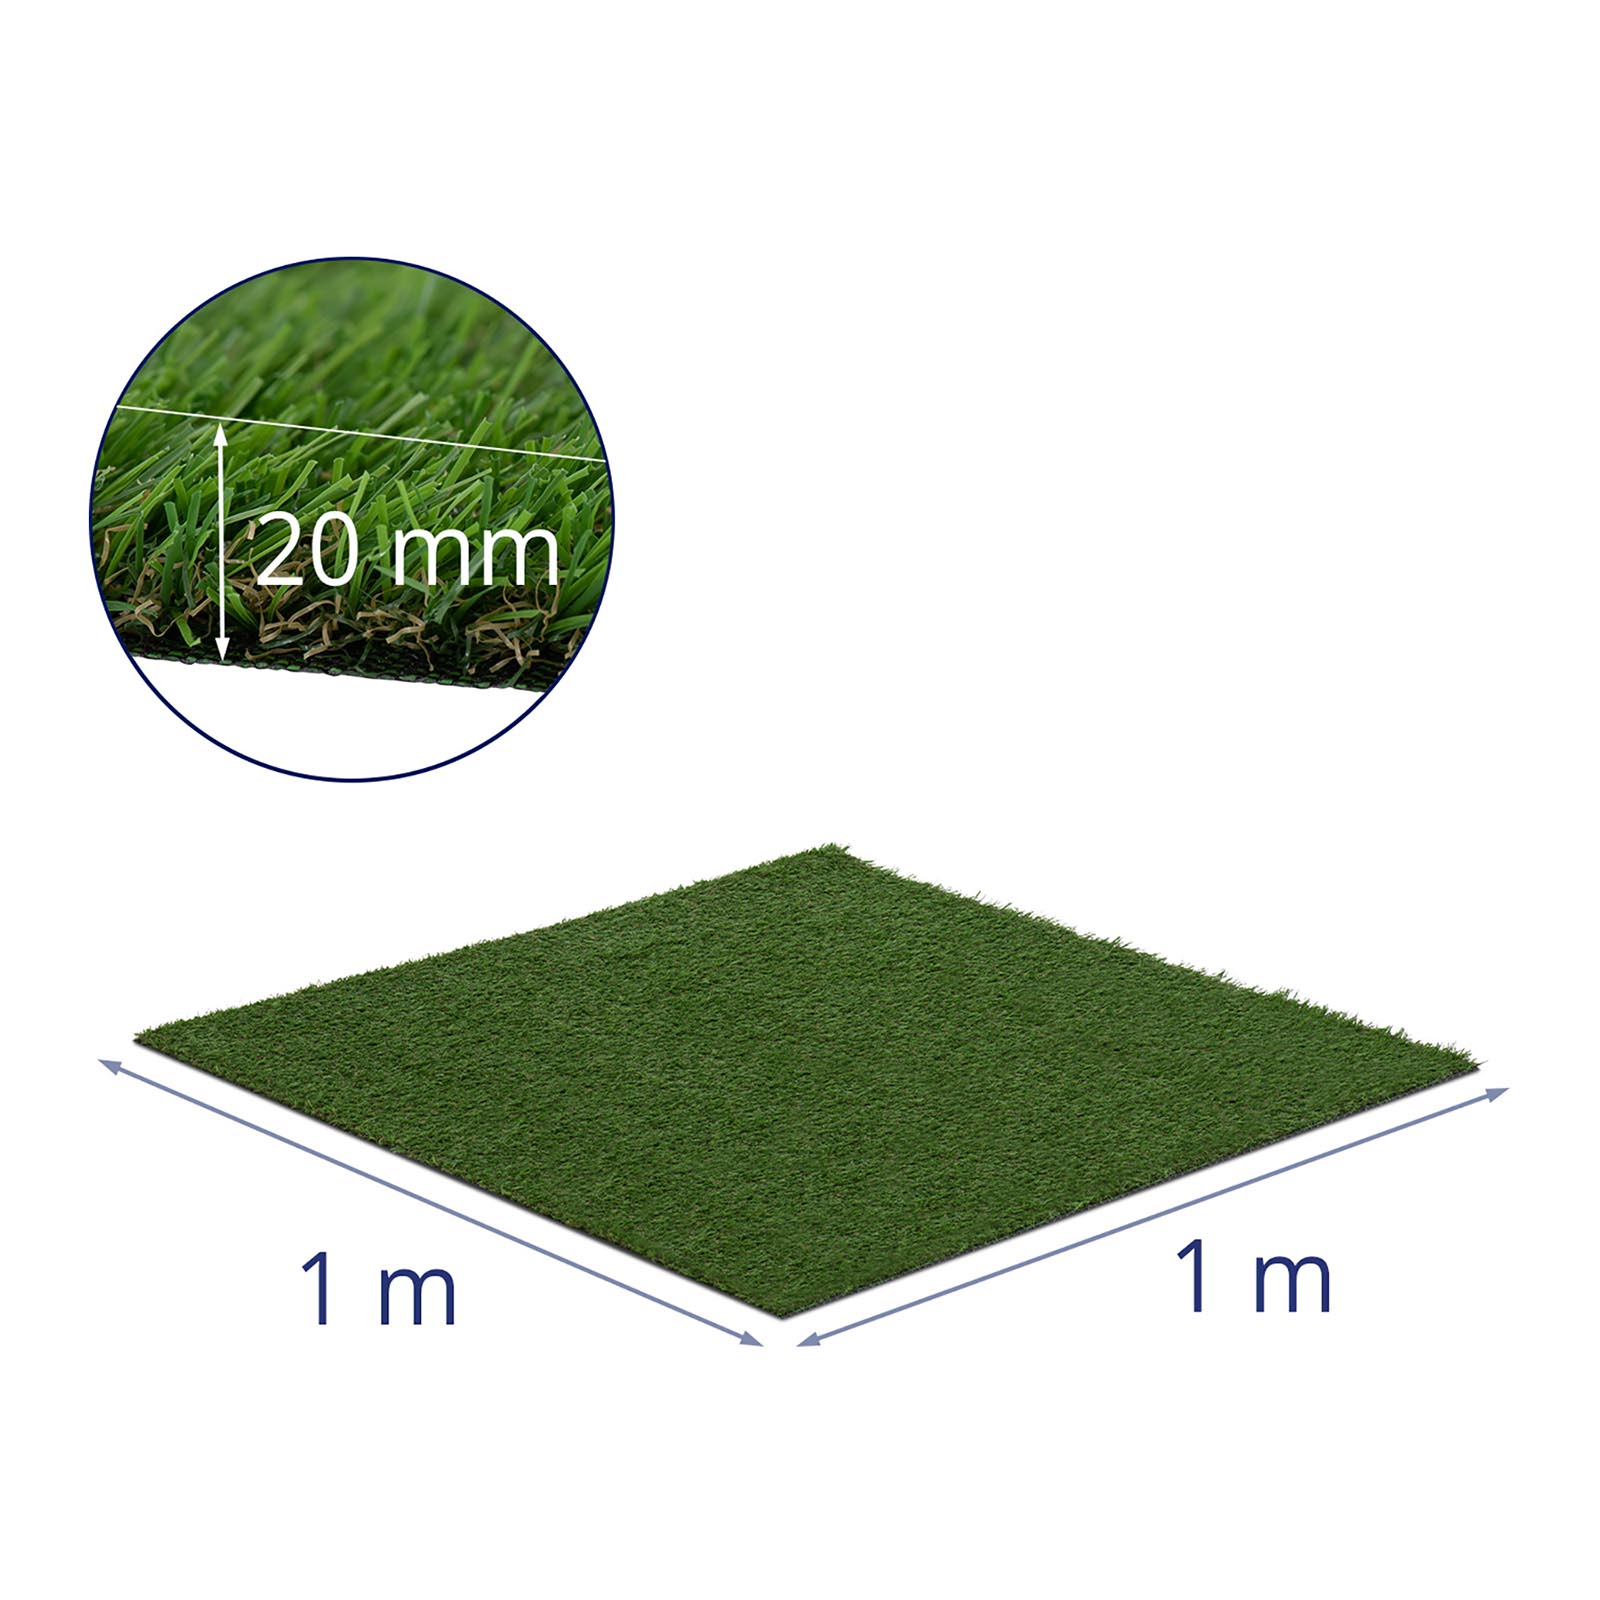 Umělá tráva - sada 5 kusů - 100 x 100 cm - výška: 20 mm - počet stehů: 13/10 cm - odolná proti UV záření.